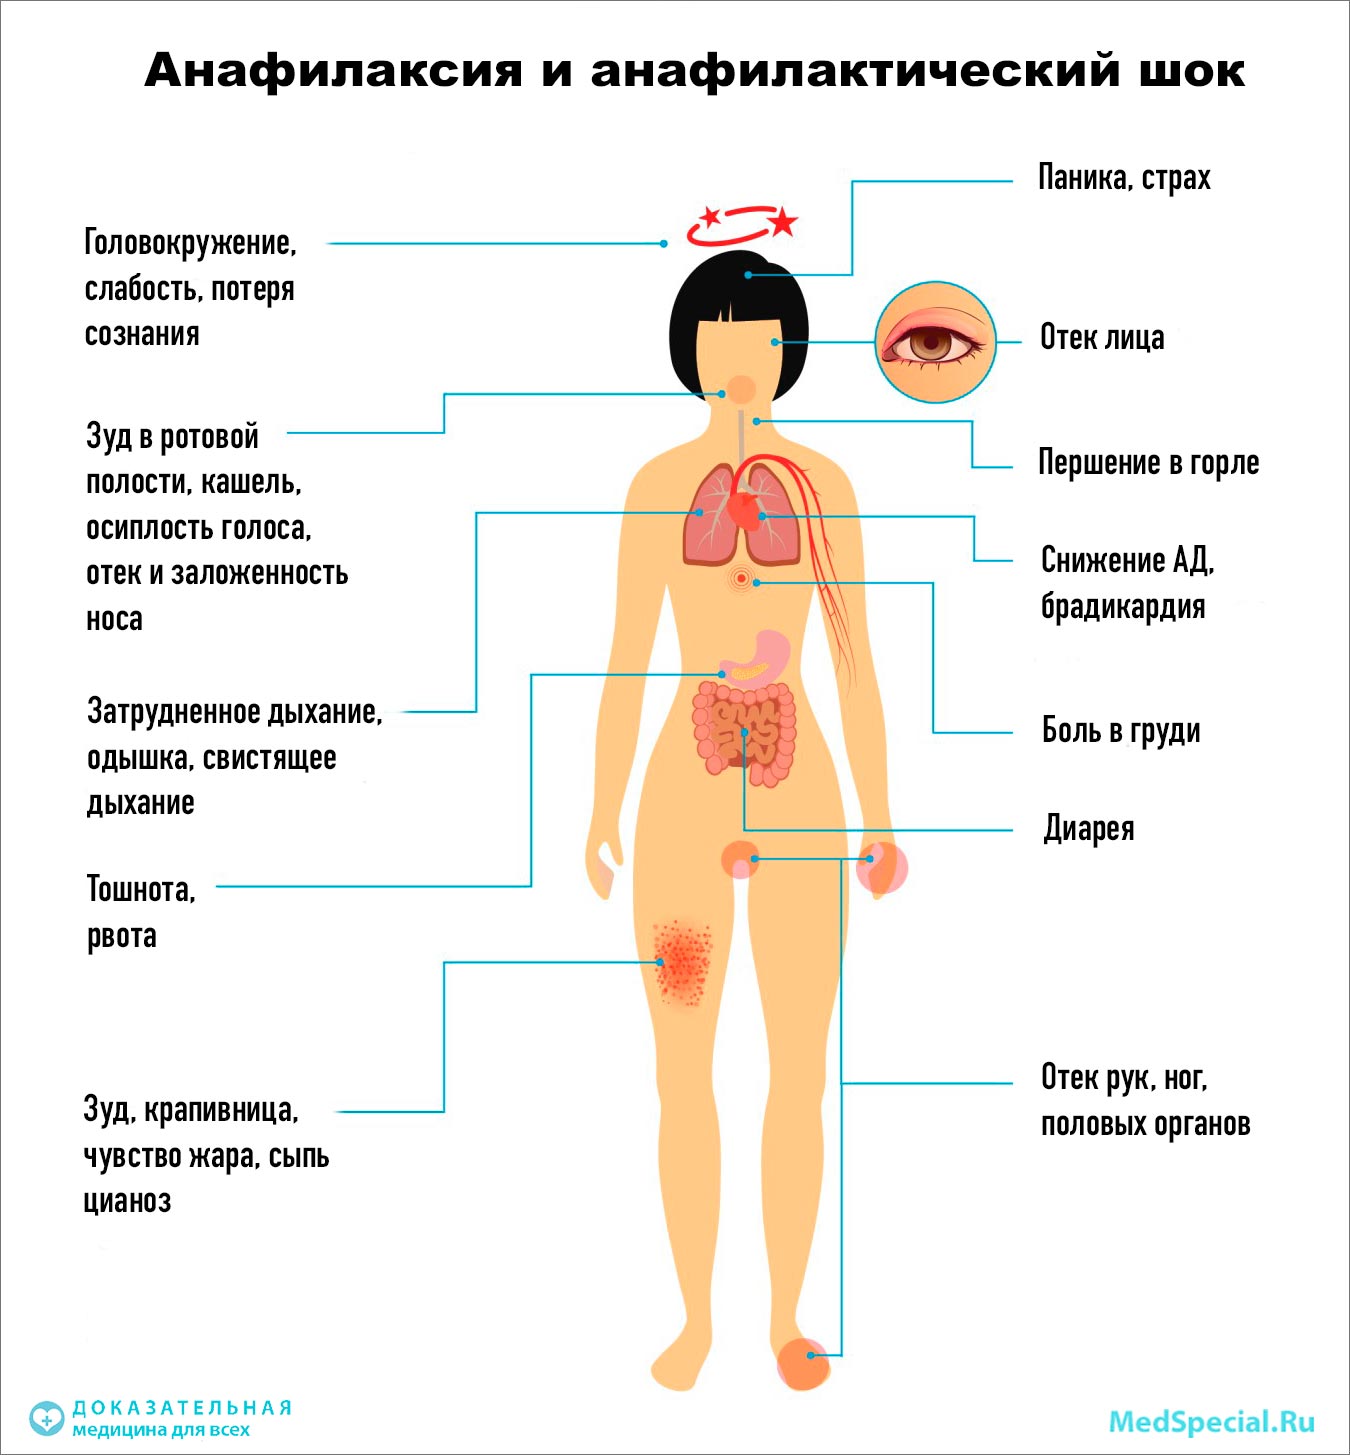 Анафилактический шок и анафилаксия. Термины и определения аллергическая реакция,анафилаксия,анафилактический шок,здоровье,медицина